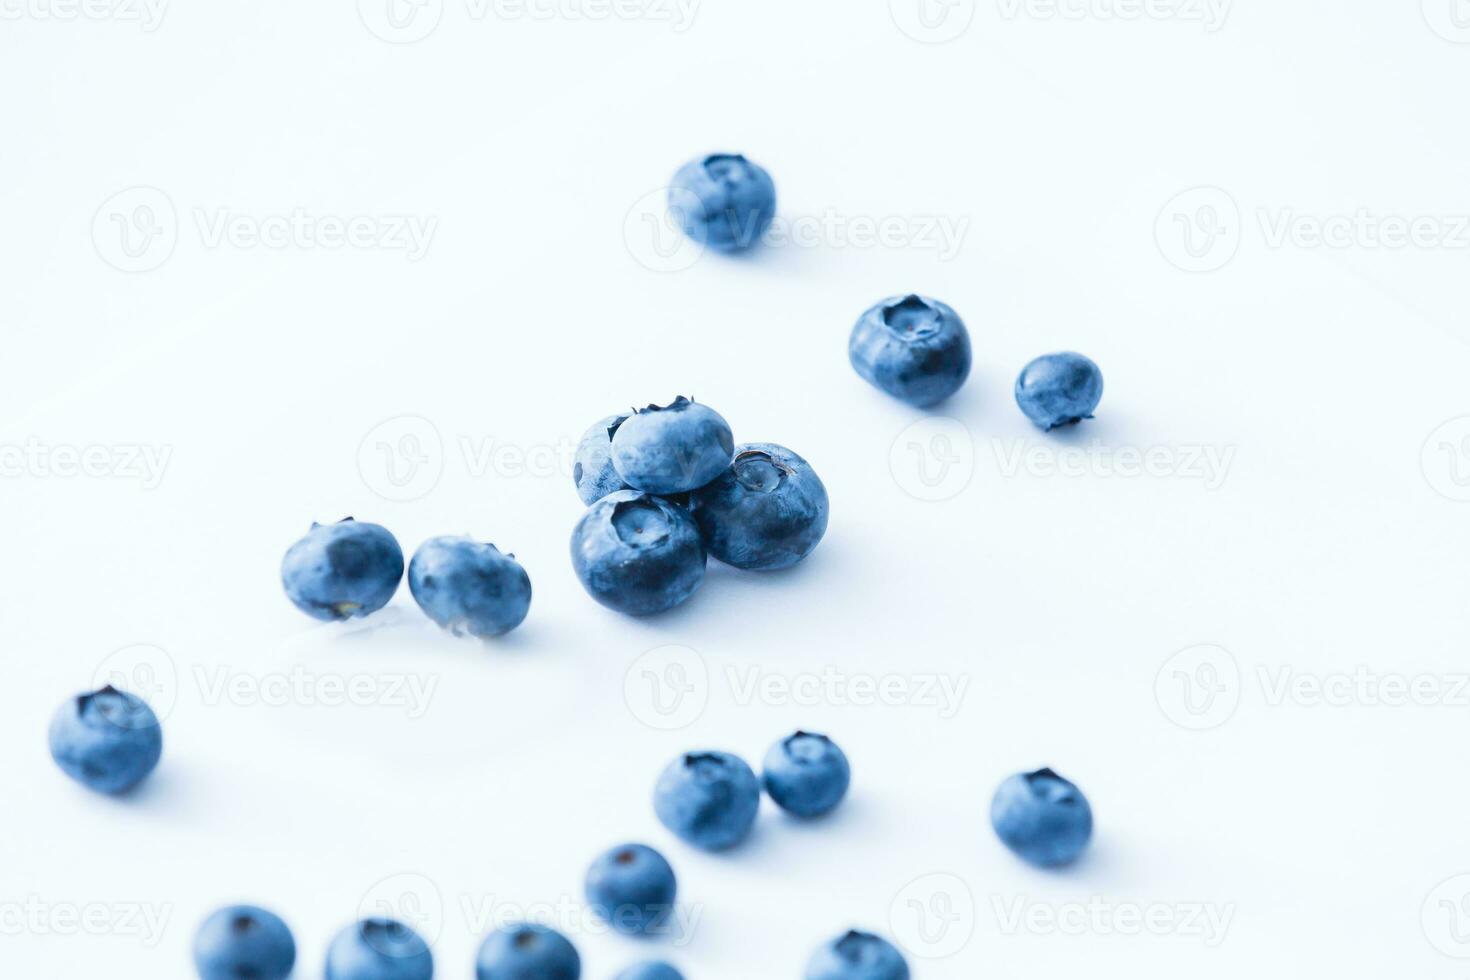 Group of fresh juisy blueberries isolated on white background photo